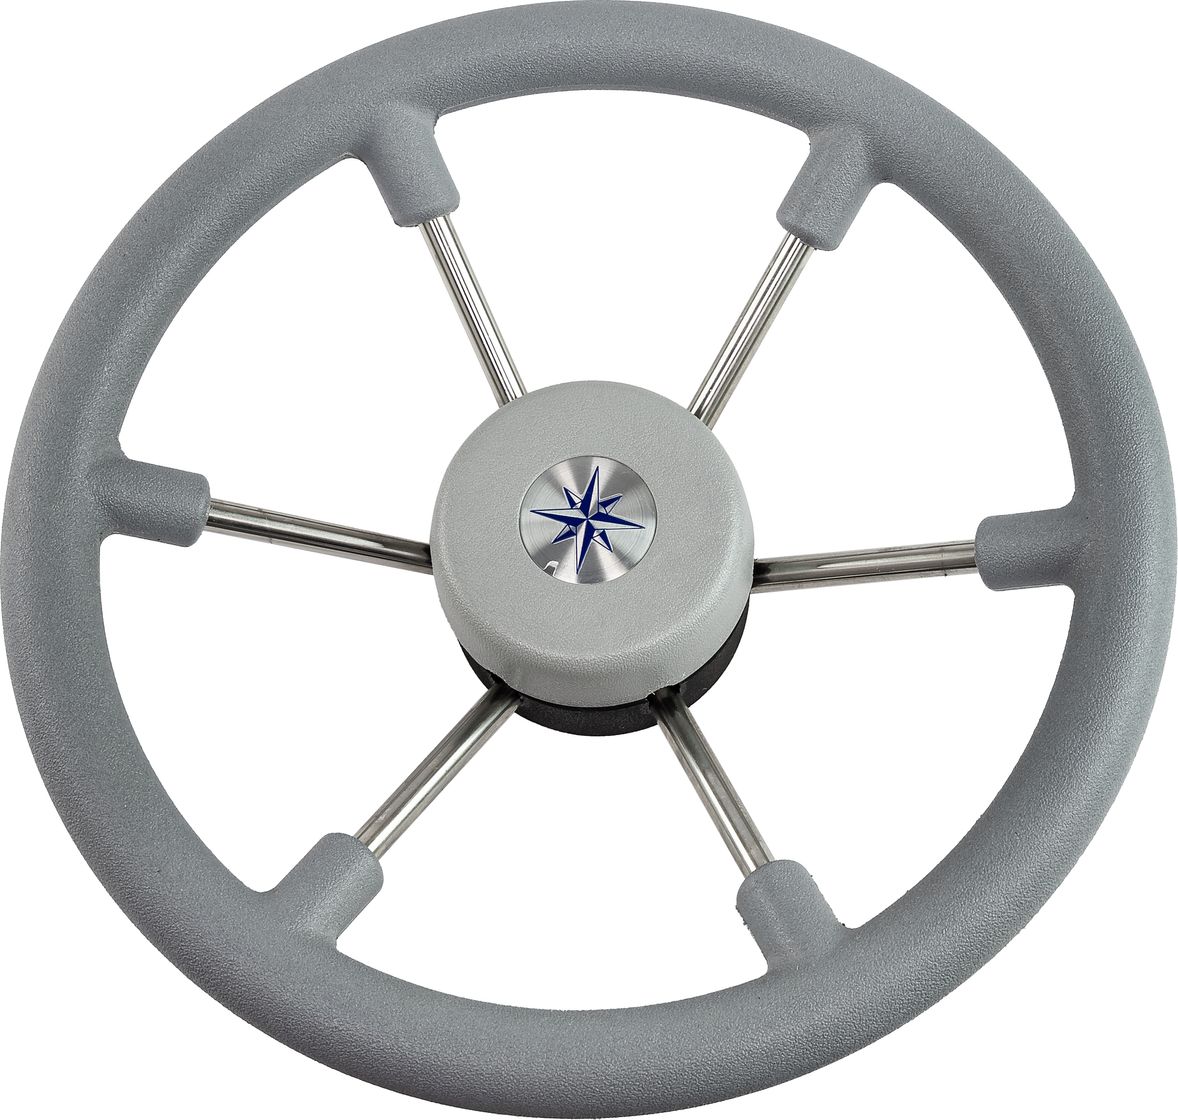 Рулевое колесо LEADER TANEGUM серый обод серебряные спицы д. 330 мм VN7330-03 рулевое колесо leader tanegum серый обод серебряные спицы д 330 мм vn7330 03